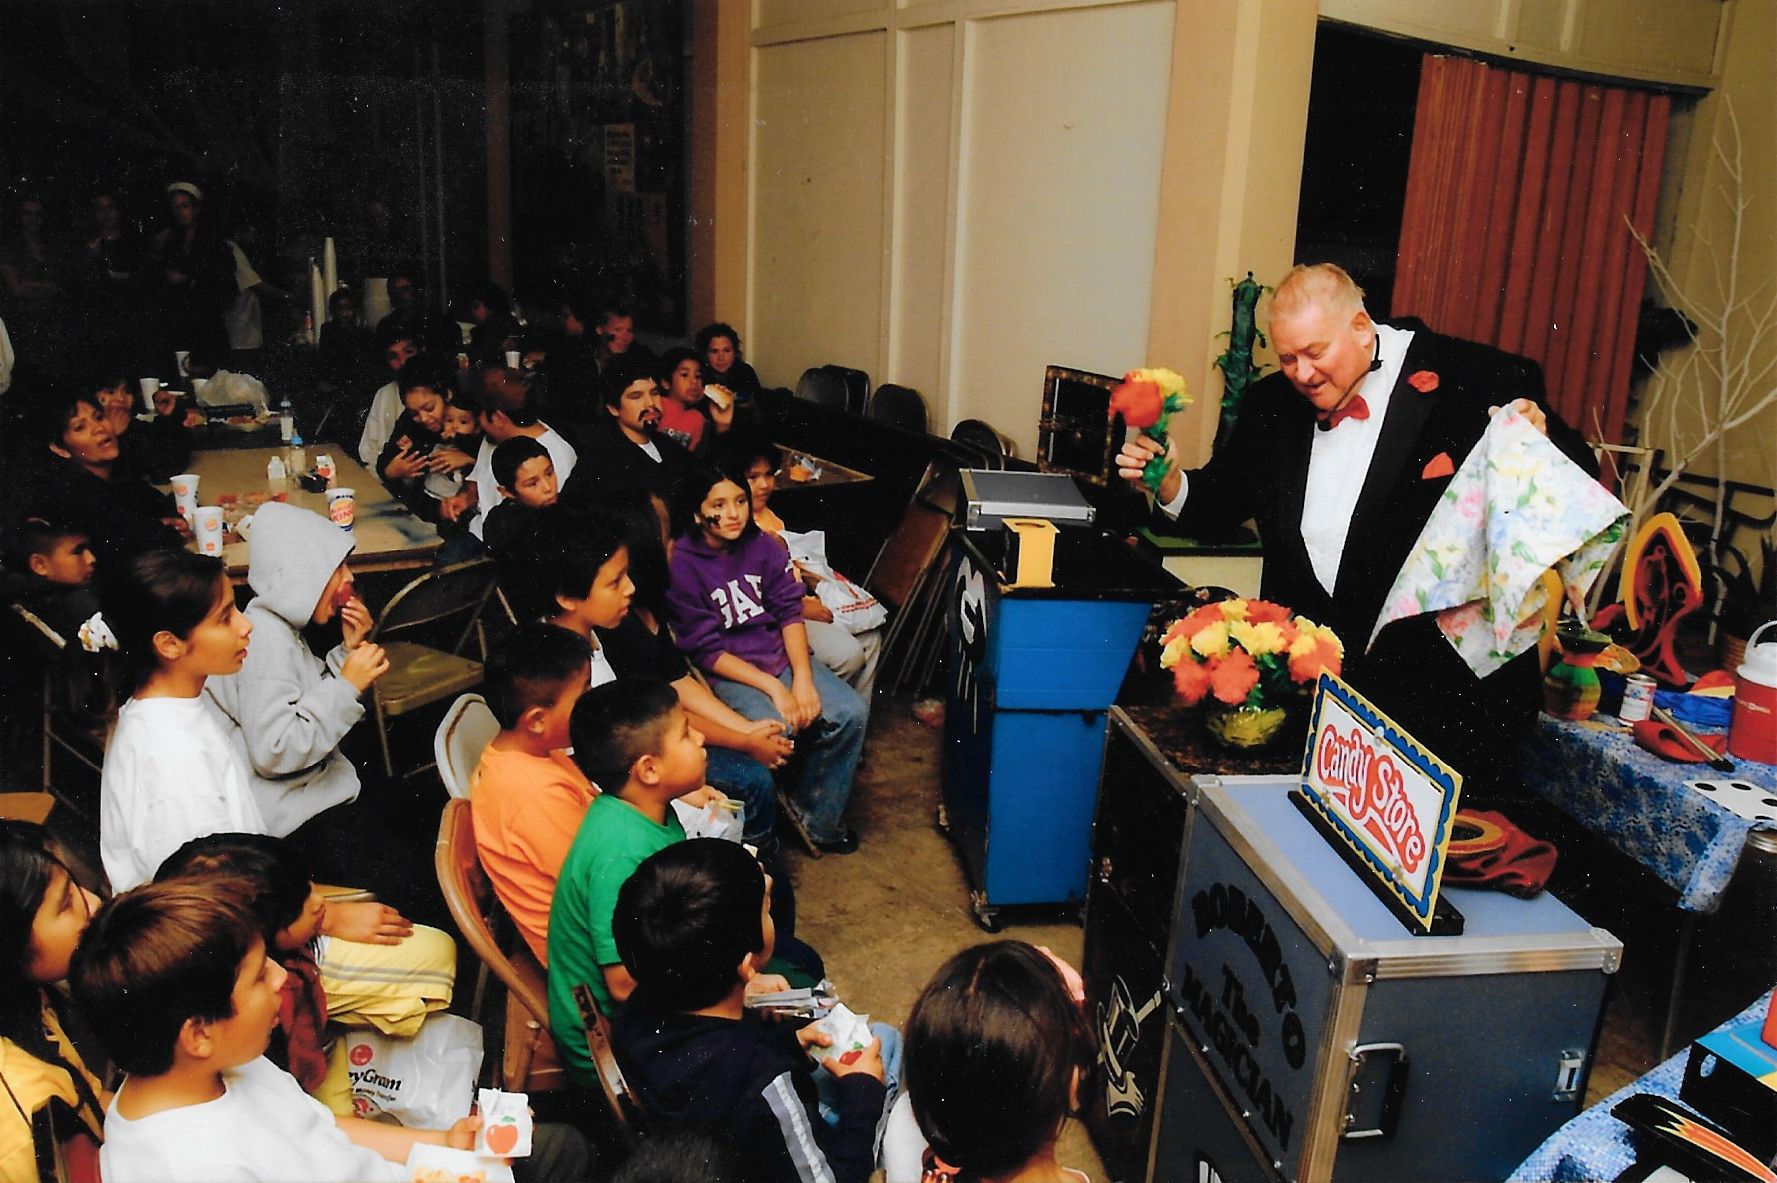 san jose kids party entertainment rental magician children's parties magic show